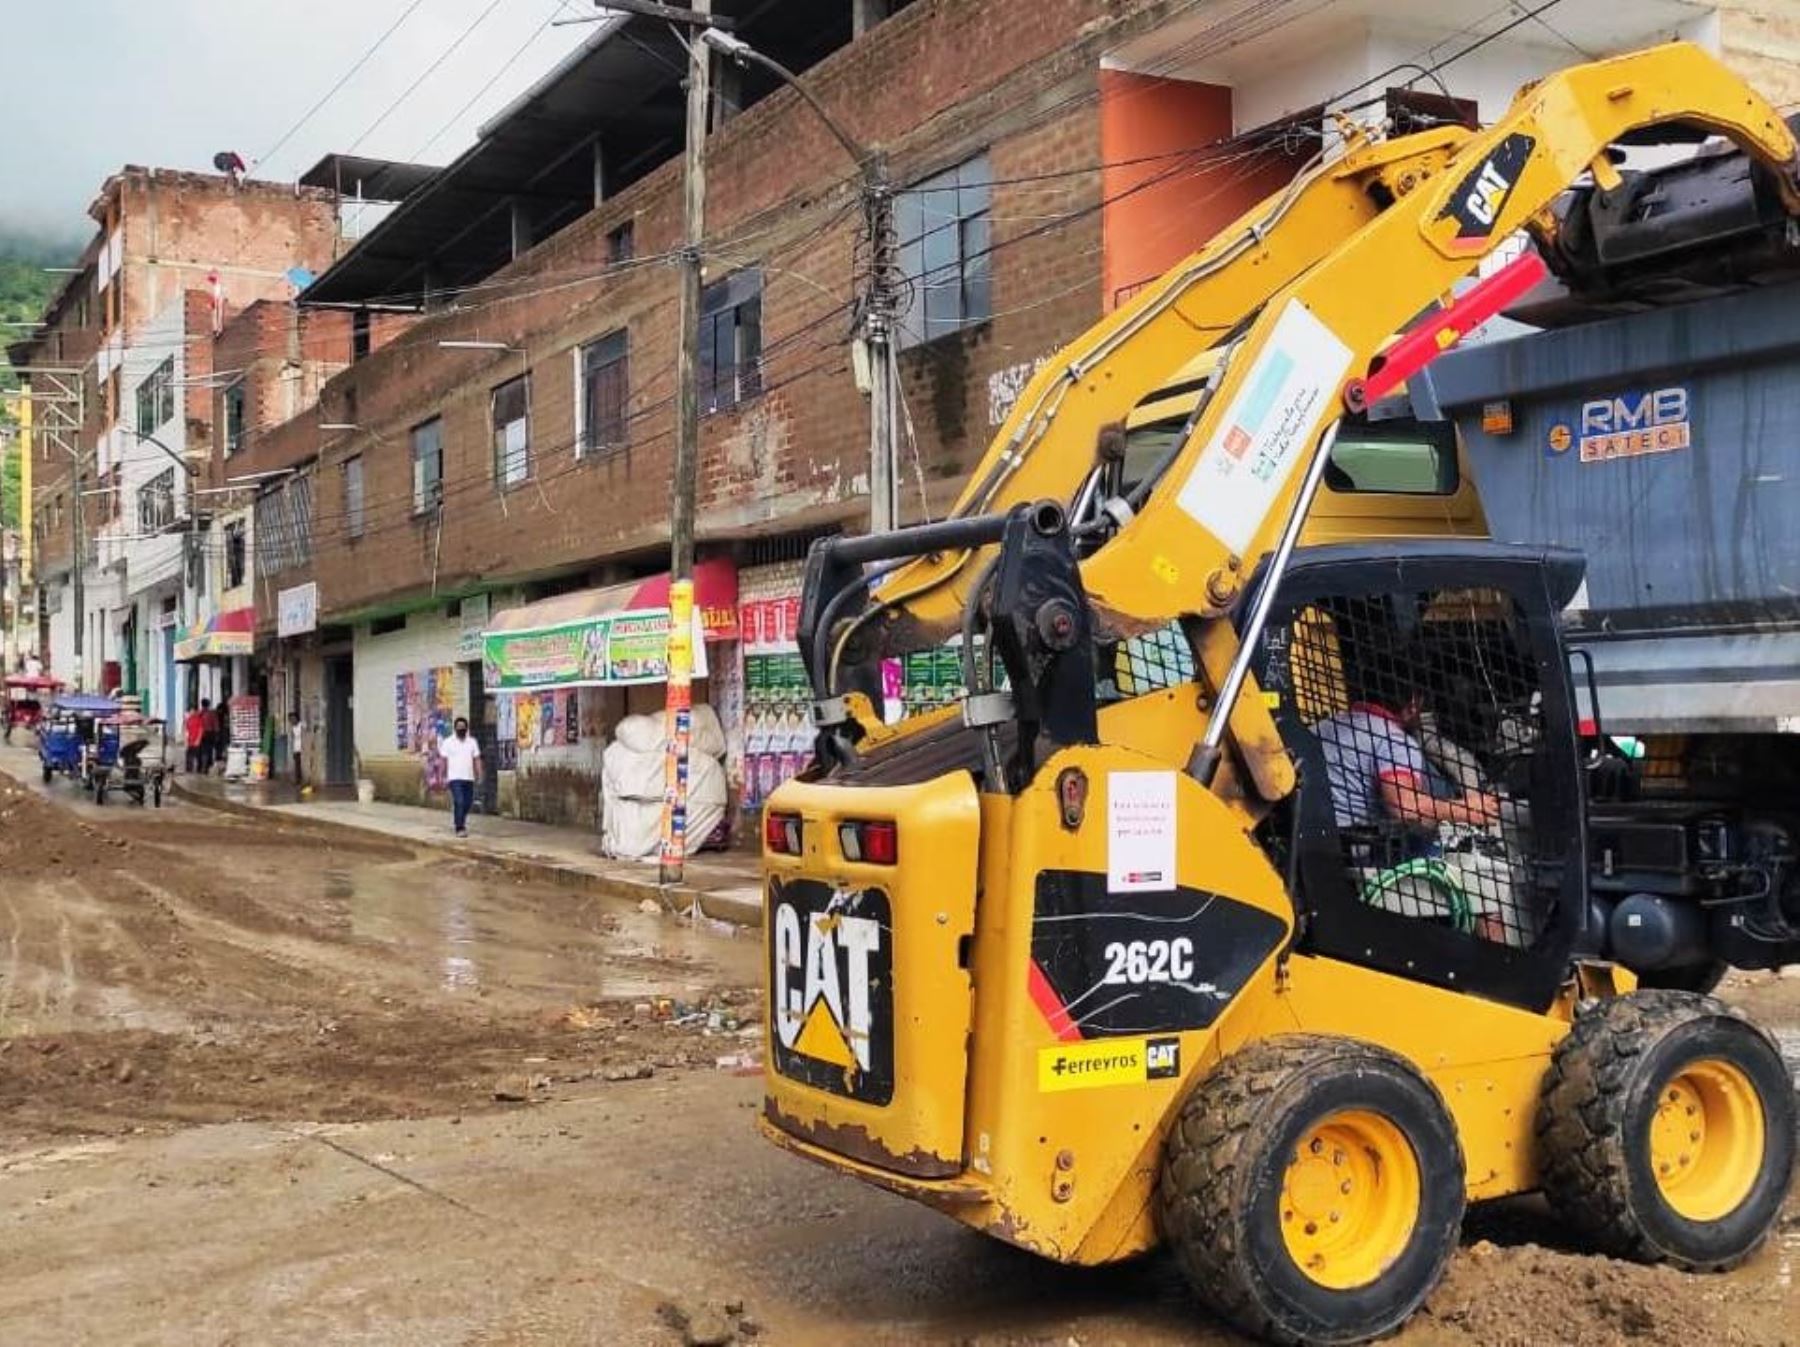 Brigadas ejecutan labores de limpieza de las calles de la ciudad de Jaén, en Cajamarca, afectada por lluvias intensas que interrumpieron el servicio de agua potable y la red de alcantarillado.